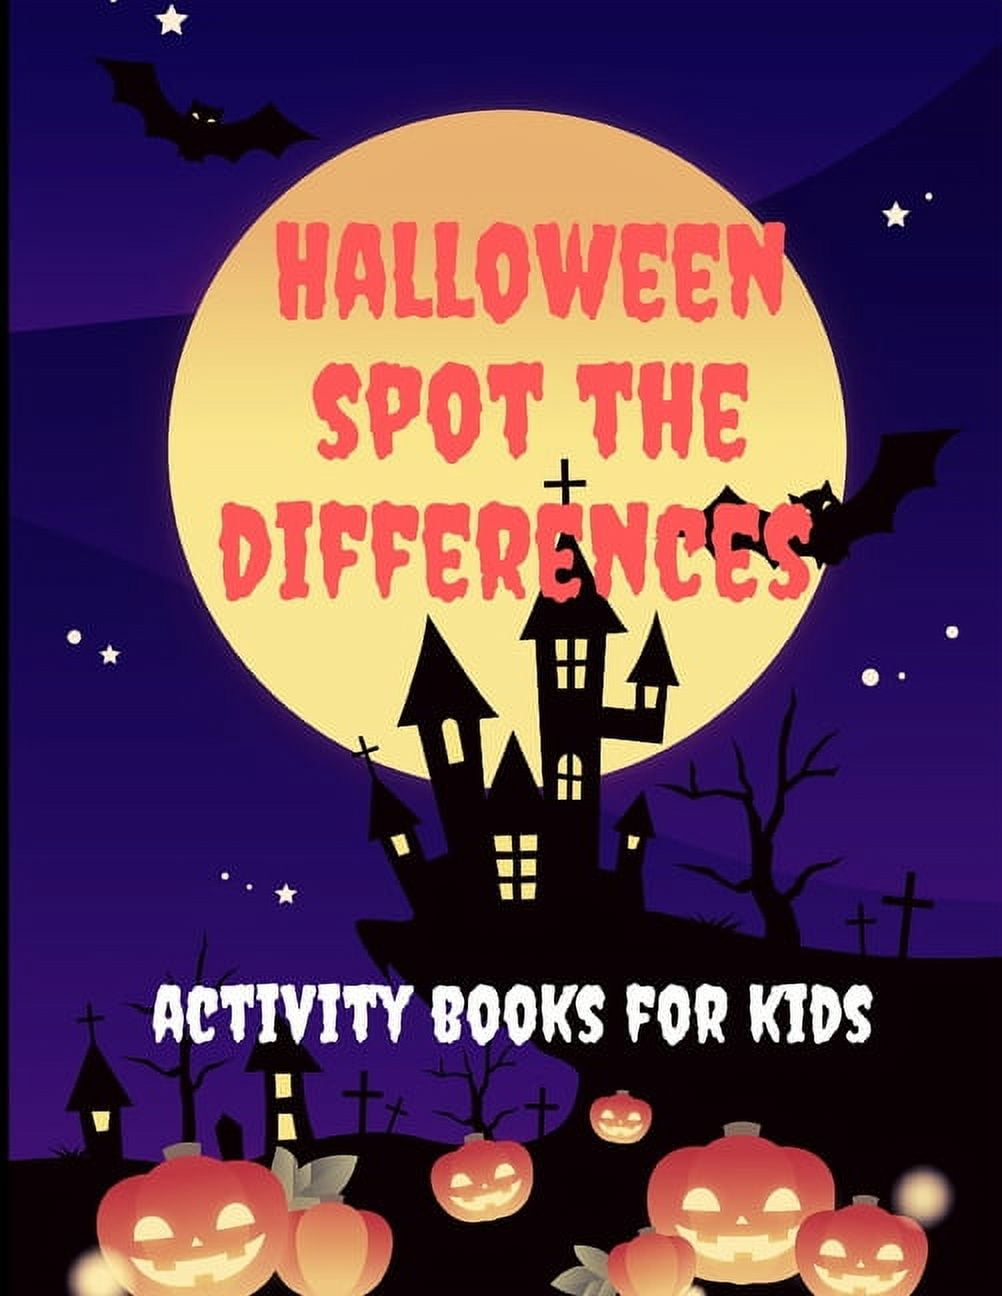 Halloween Kid Activity Book: Kid Halloween Activities: Halloween